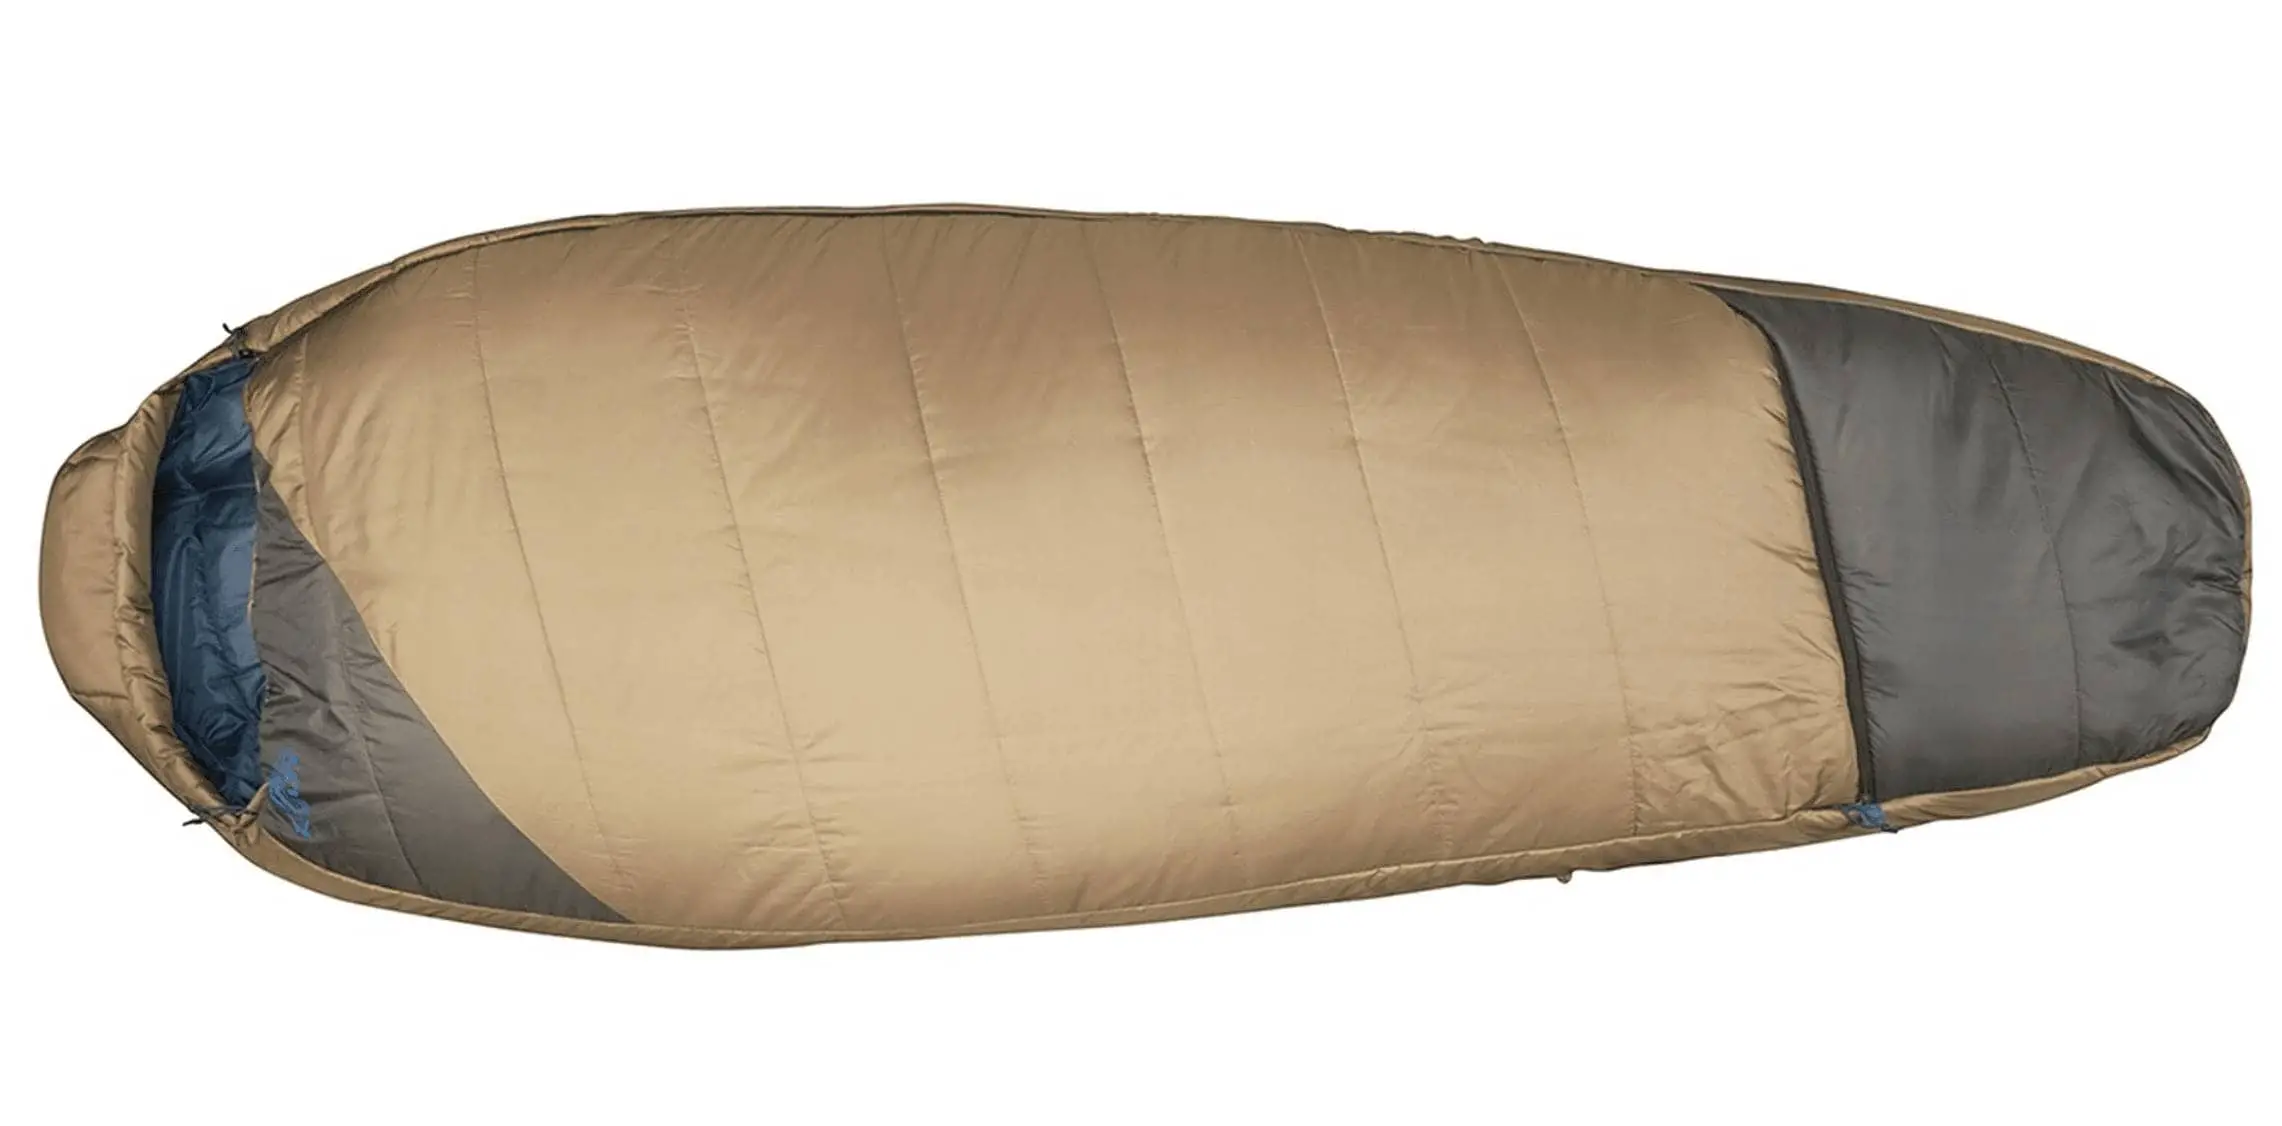 Kelty Tuck 20 best sleeping bag under 100